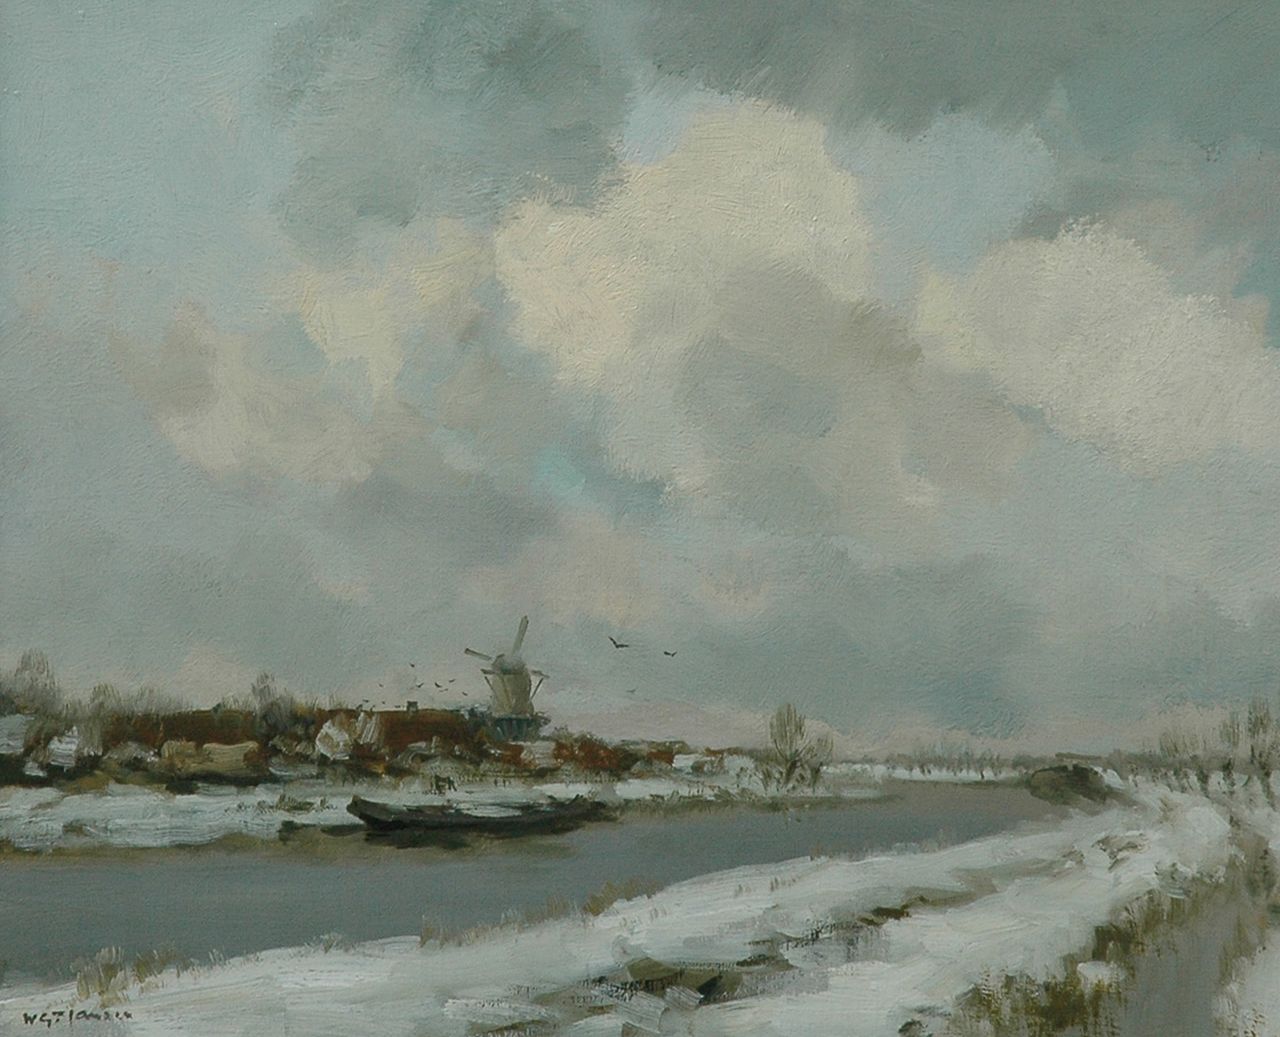 Jansen W.G.F.  | 'Willem' George Frederik Jansen, A polder landscape in winter, Öl auf Leinwand 50,0 x 60,2 cm, signed l.l.